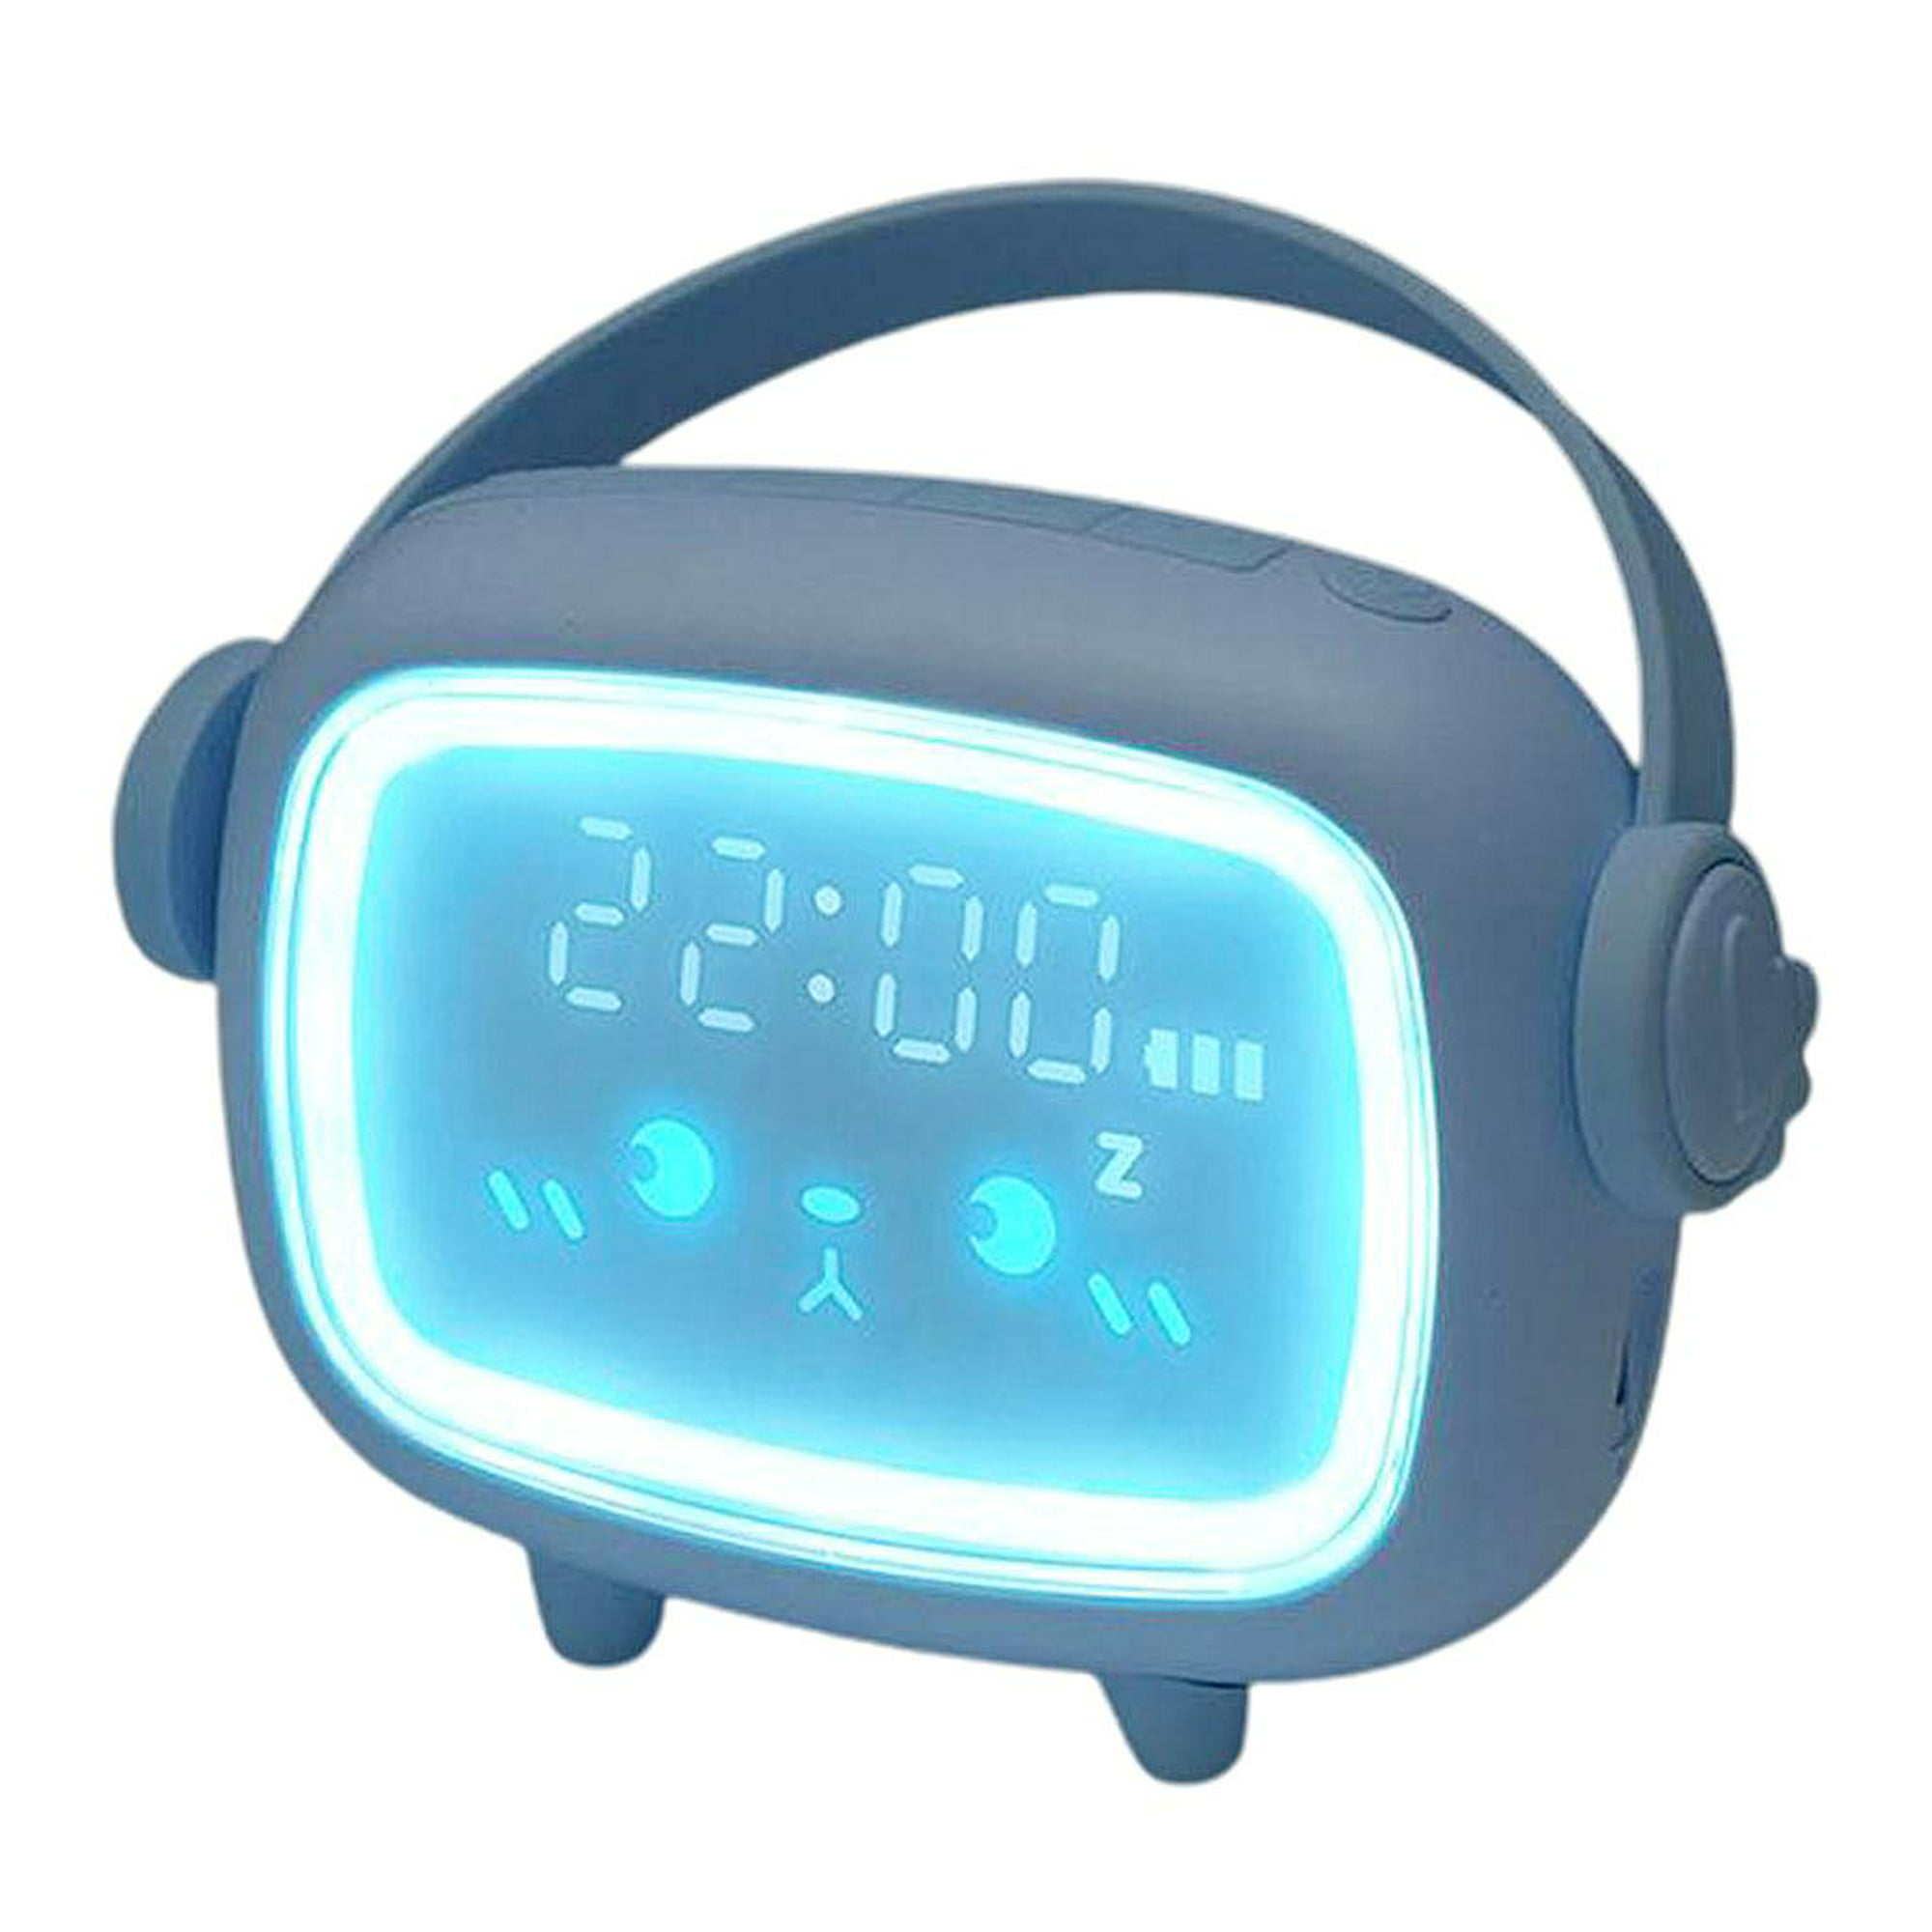  Dekala - Reloj despertador con luz de amanecer, reloj  despertador de luz natural para dormitorios, luz solar, reloj despertador  para niños, reloj digital inteligente, radio, luz gradual, cambio de color,  simulador